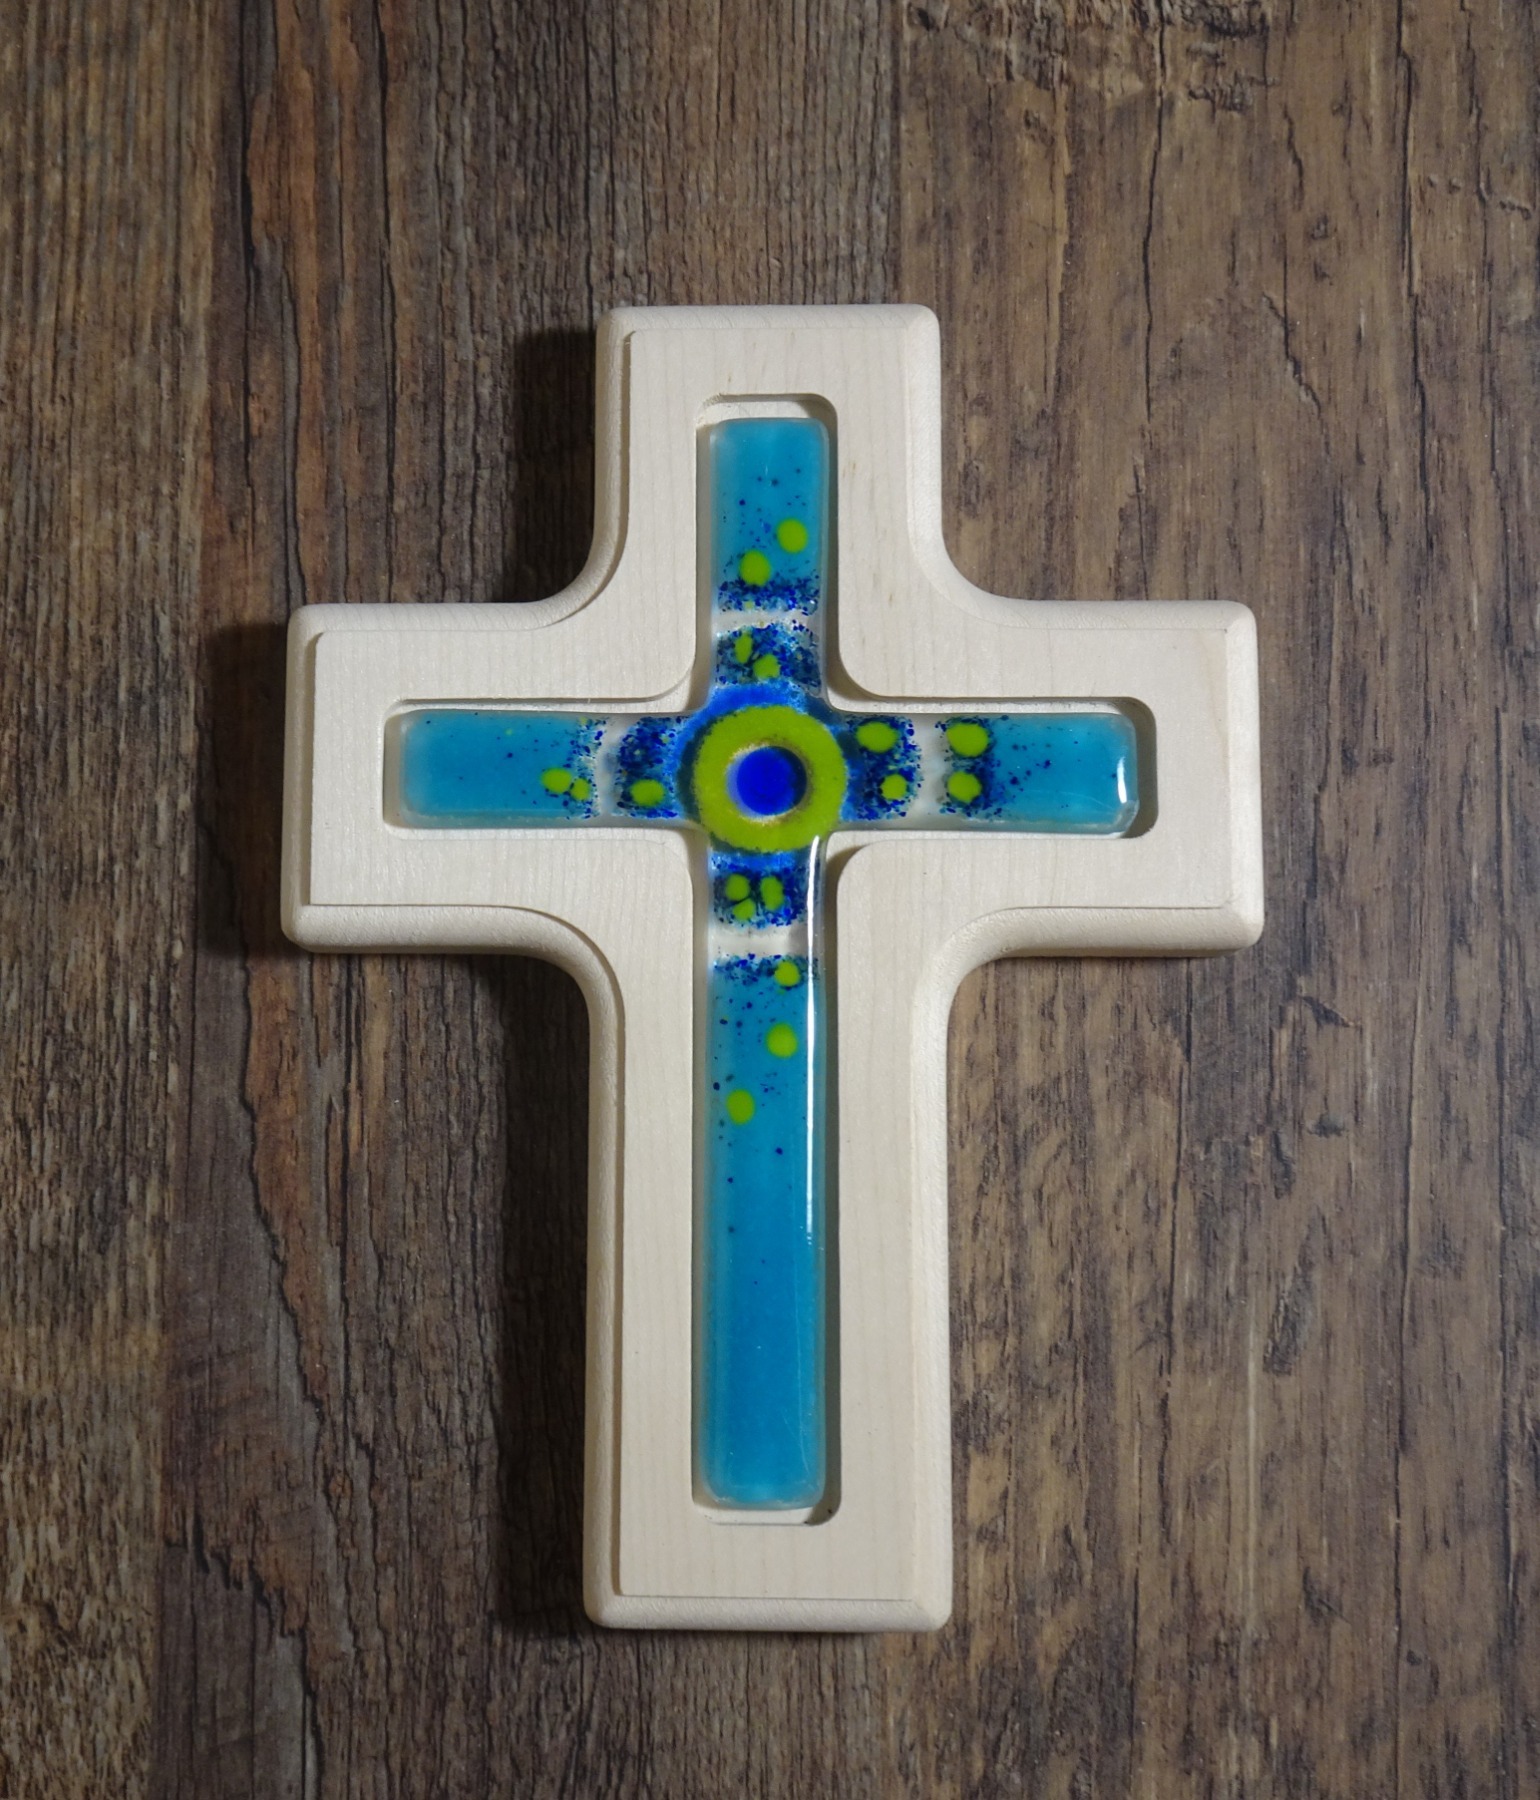 Holzkreuz mit Fusingglas in blau und grün, Kreuz aus Ahorn 4